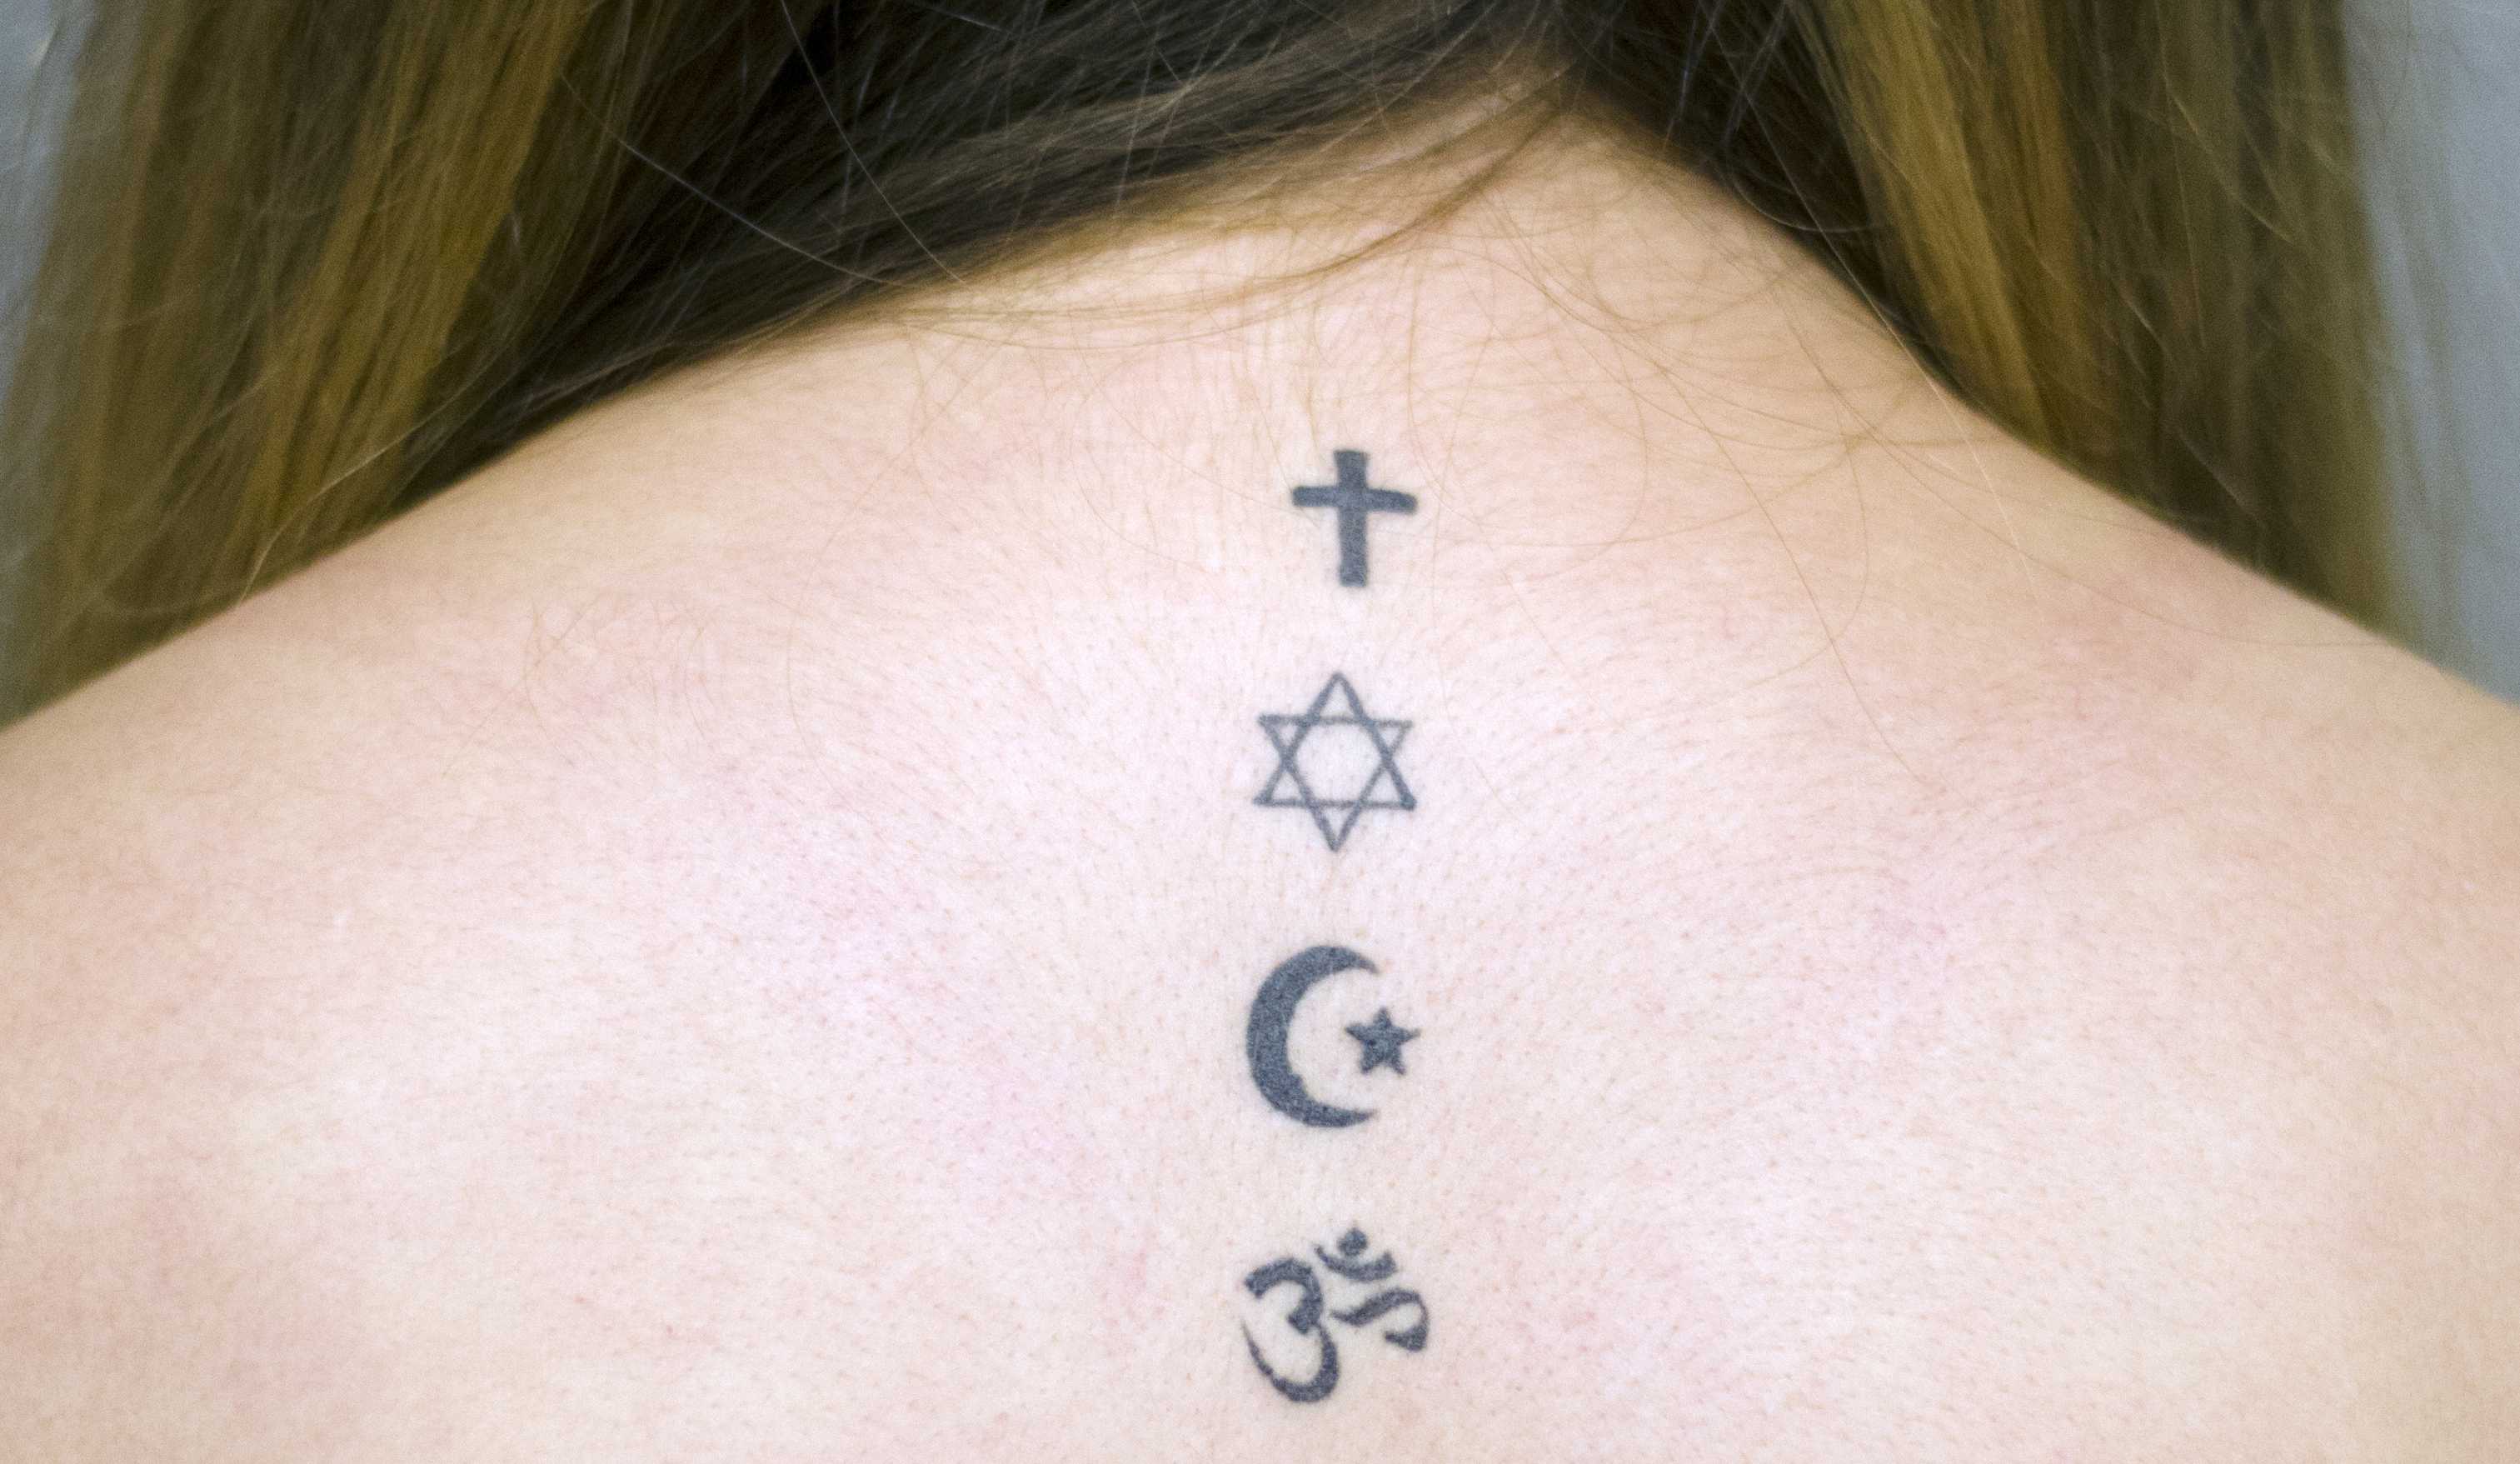 Cross Dove Jesus Fish Faith Temporary Tattoo / Religious Tattoo - Etsy